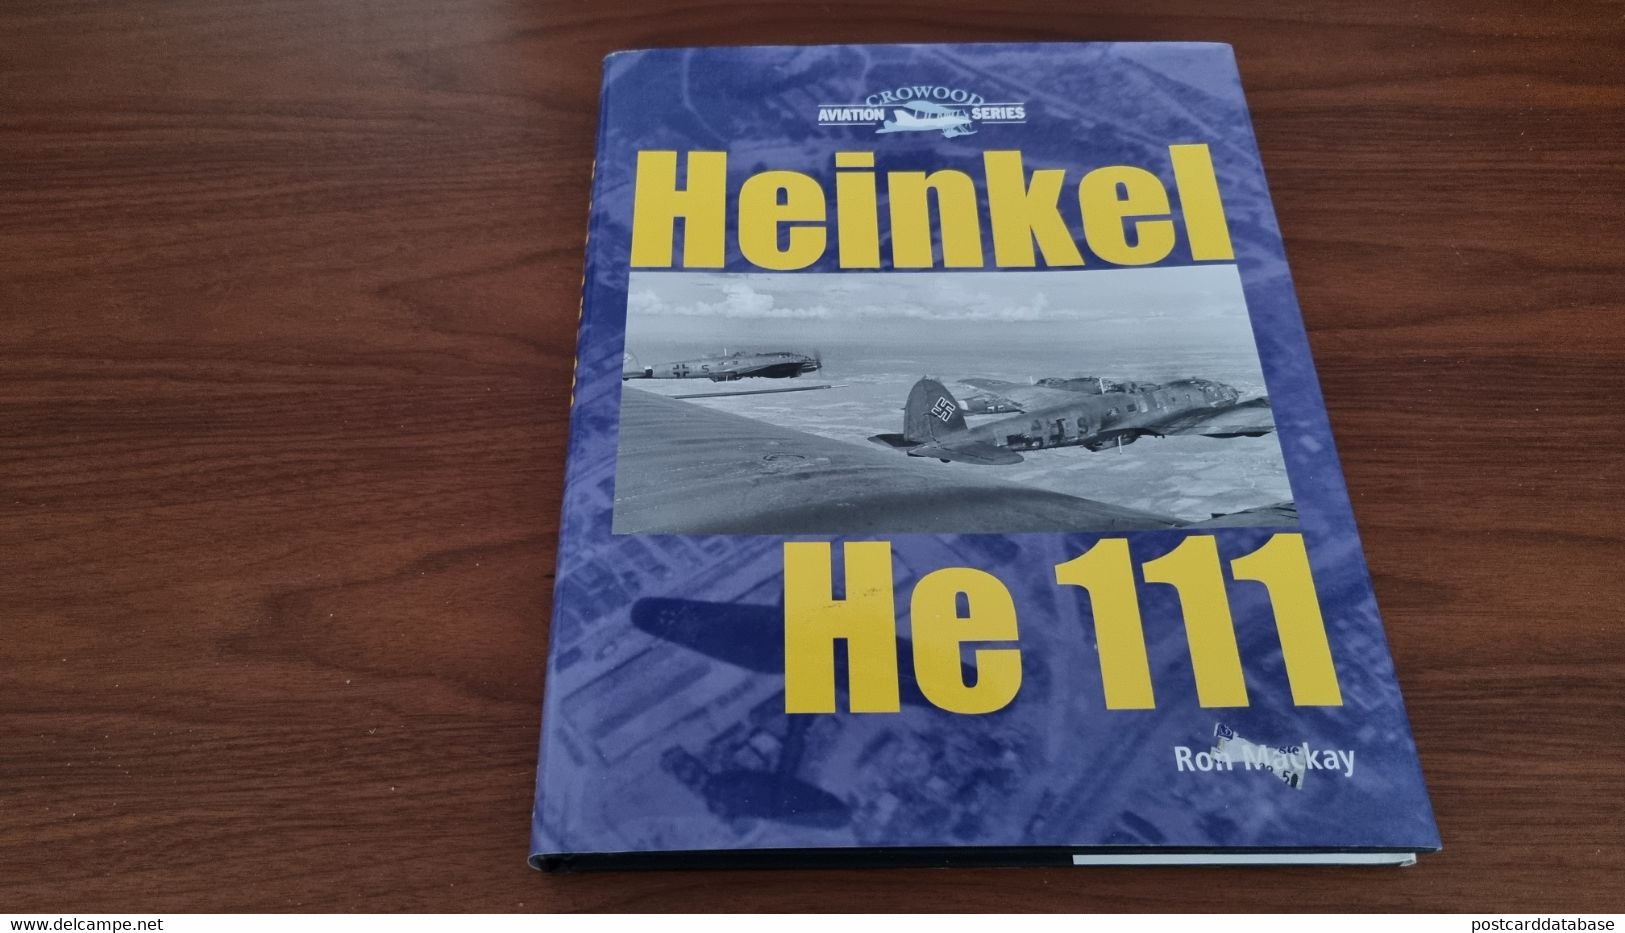 Heinkel He 111 - Aviation Series - Ron Mackay - Guerra 1939-45